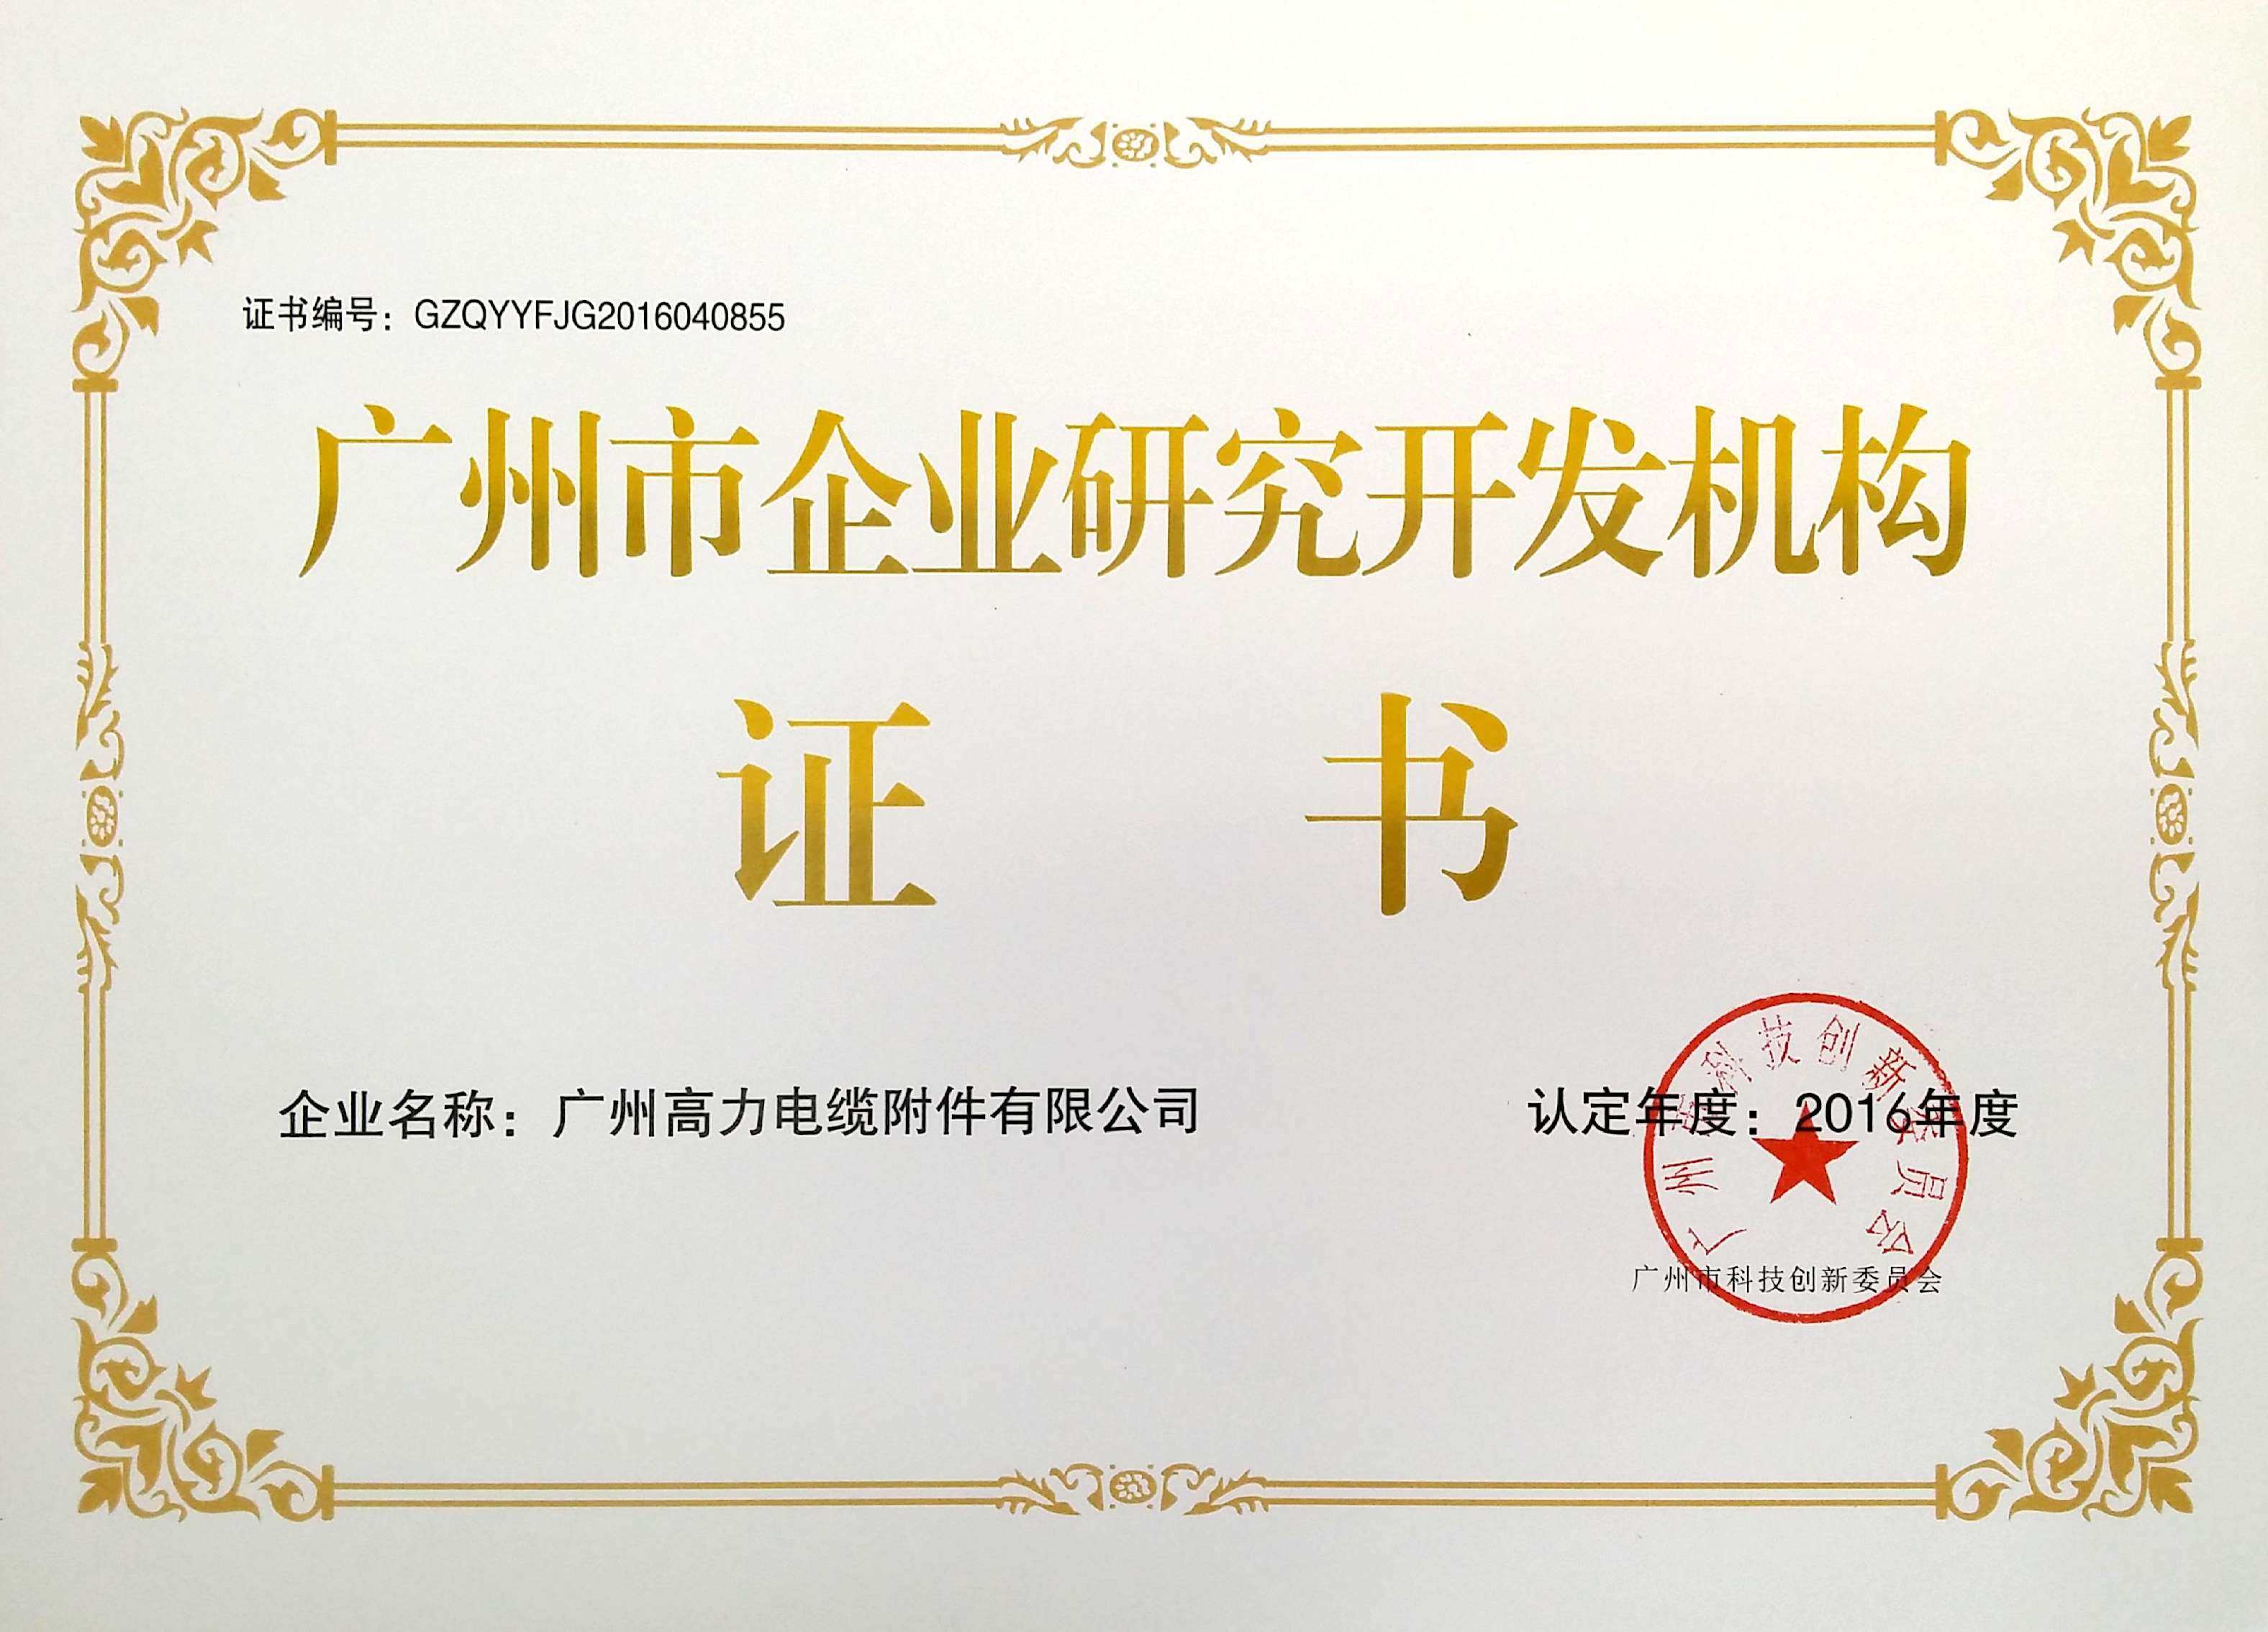  广州市企业研究开发机构证书